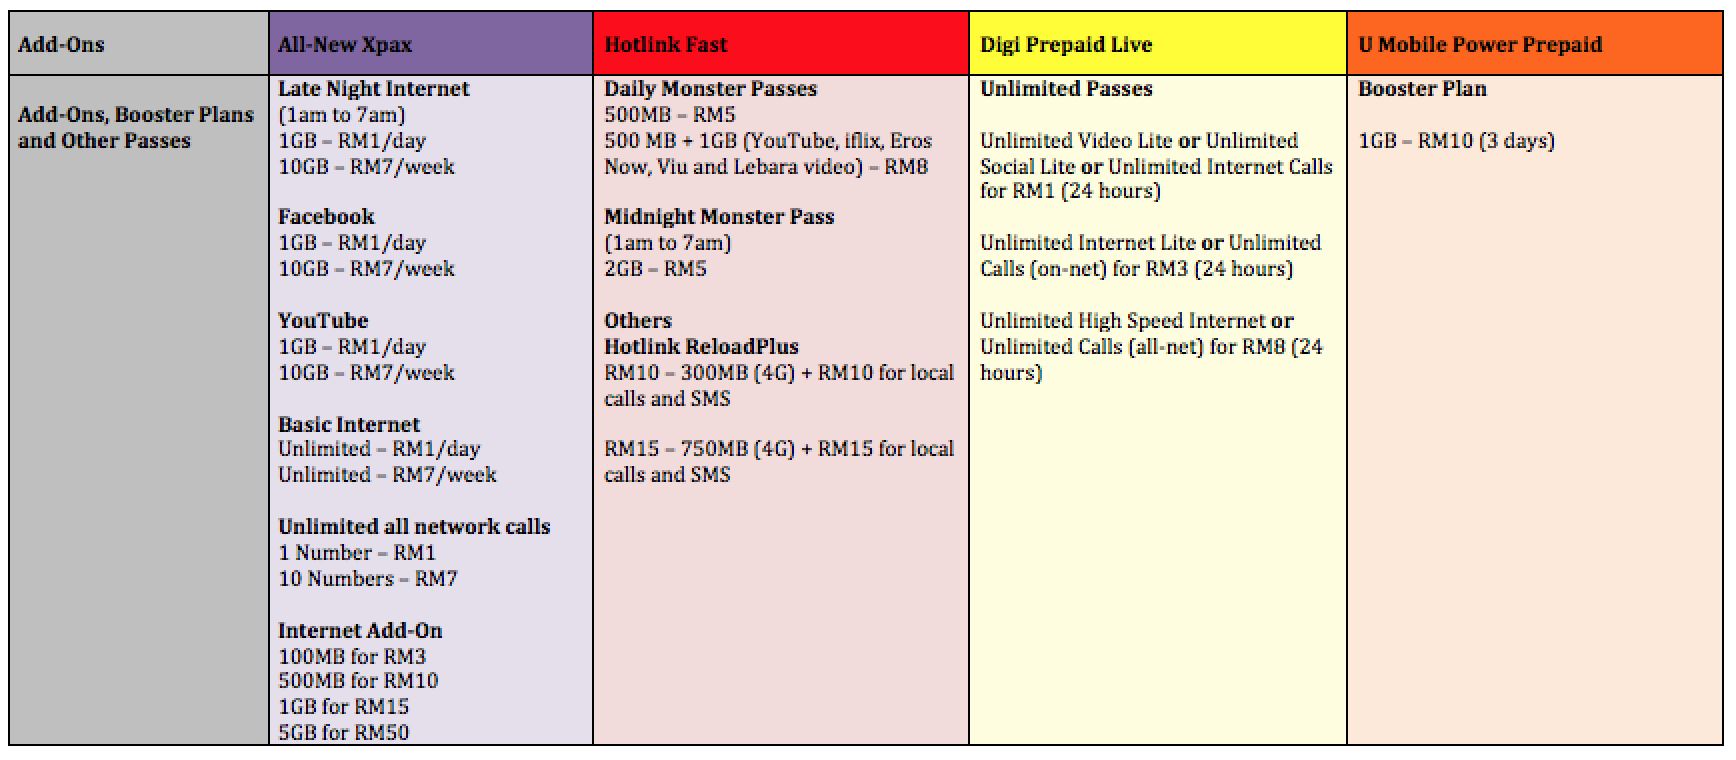 Add Ons - Xpax vs Hotlink Fast vs Digi Prepaid Live vs U Mobile Power Prepaid